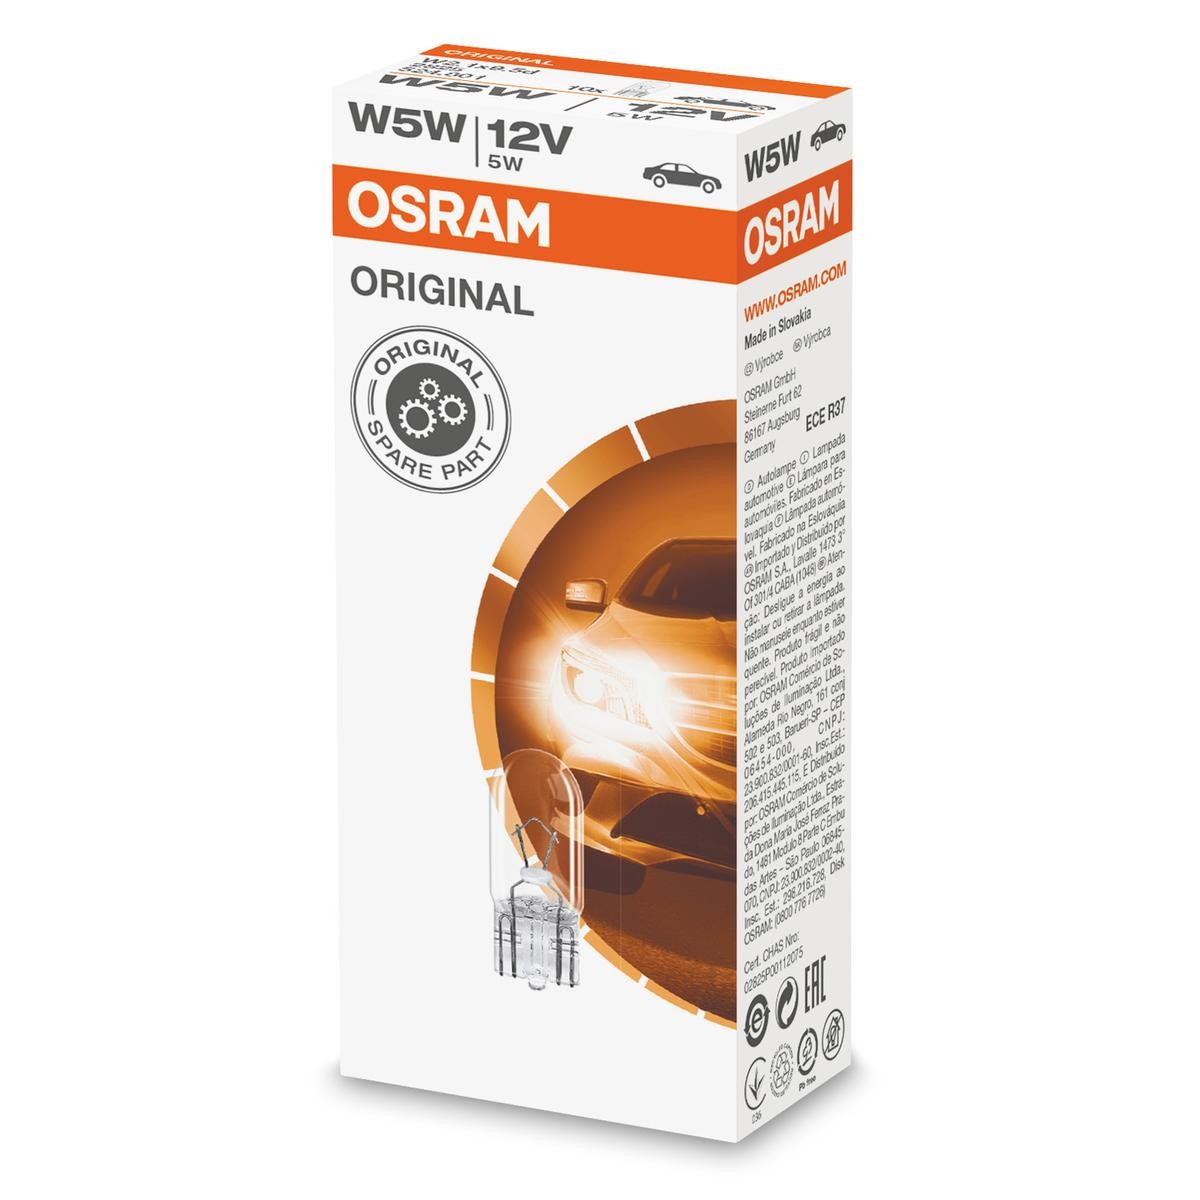 W5W OSRAM 2825 - VW Karosserieteile bestellen